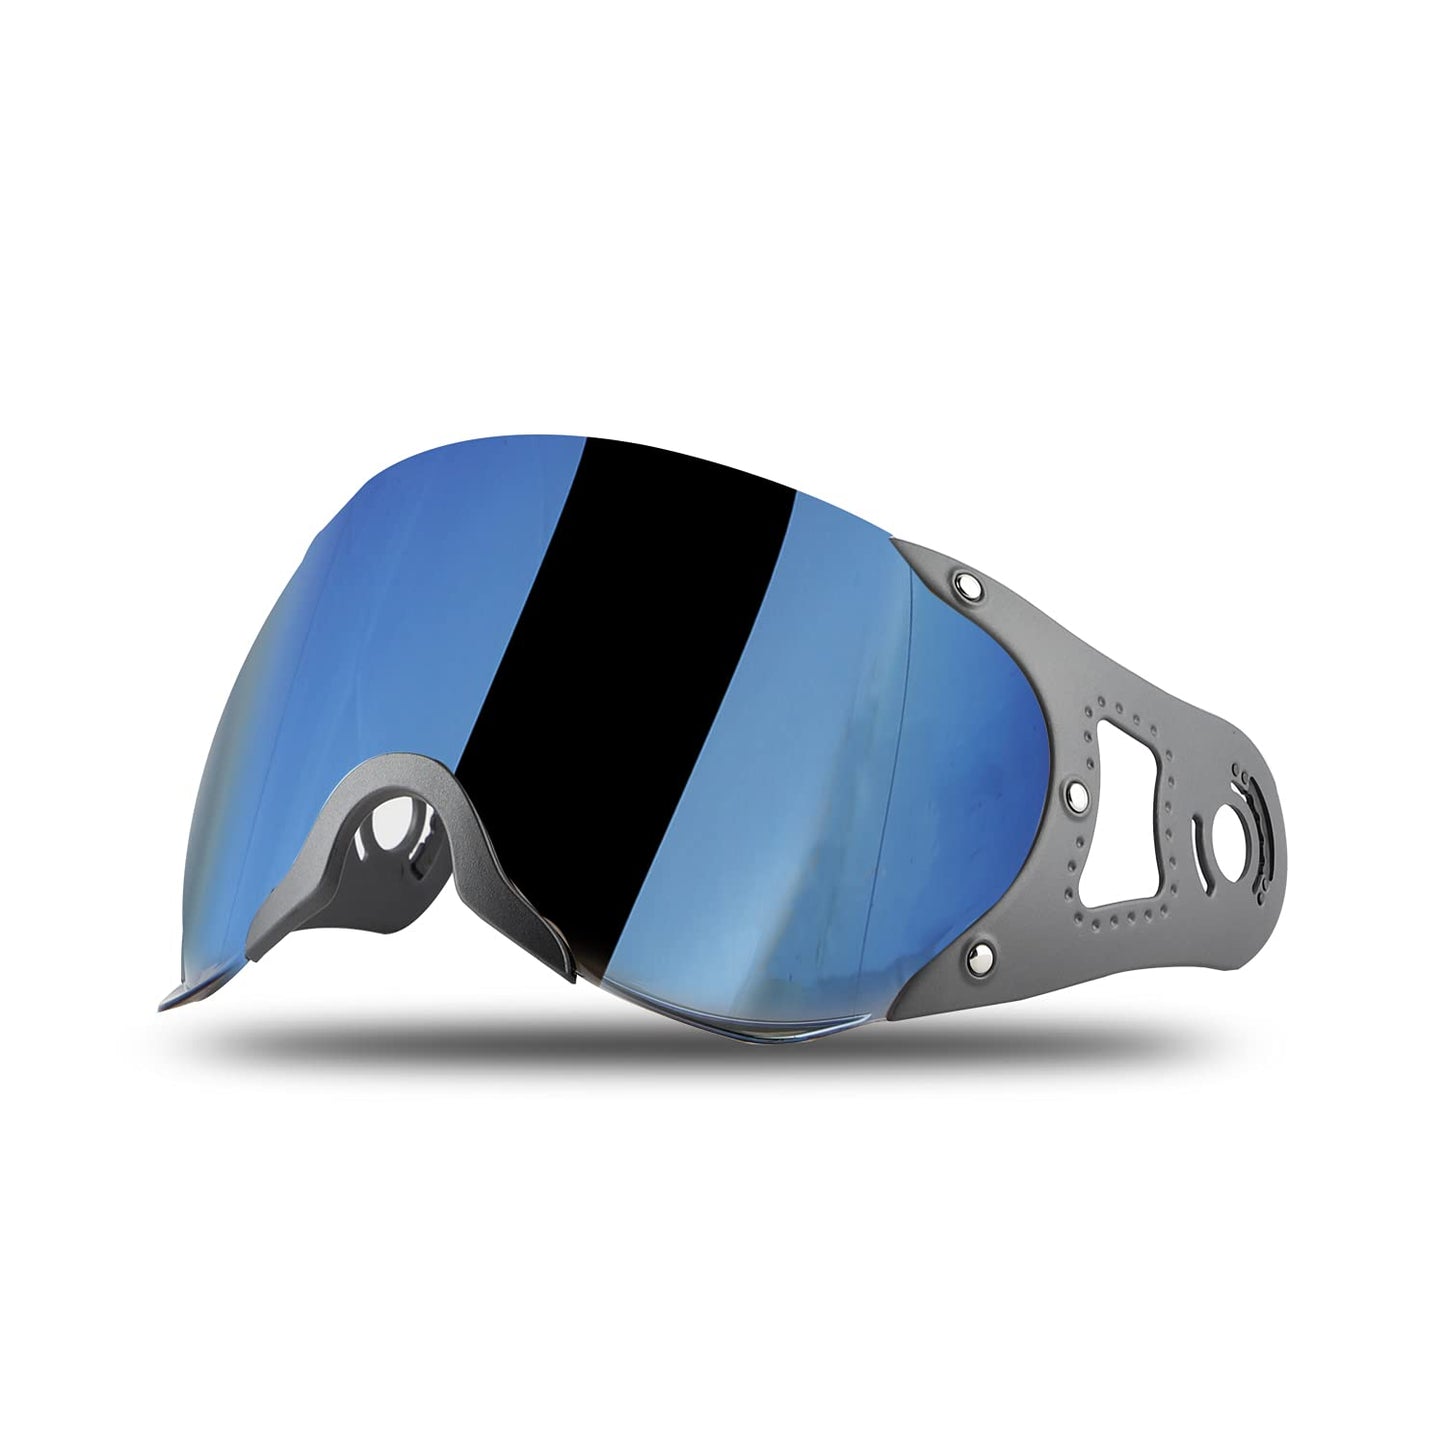 Steelbird SB-27 Helmet Visor Compatible for All SB-27 Model Helmets (Chrome Blue Visor)